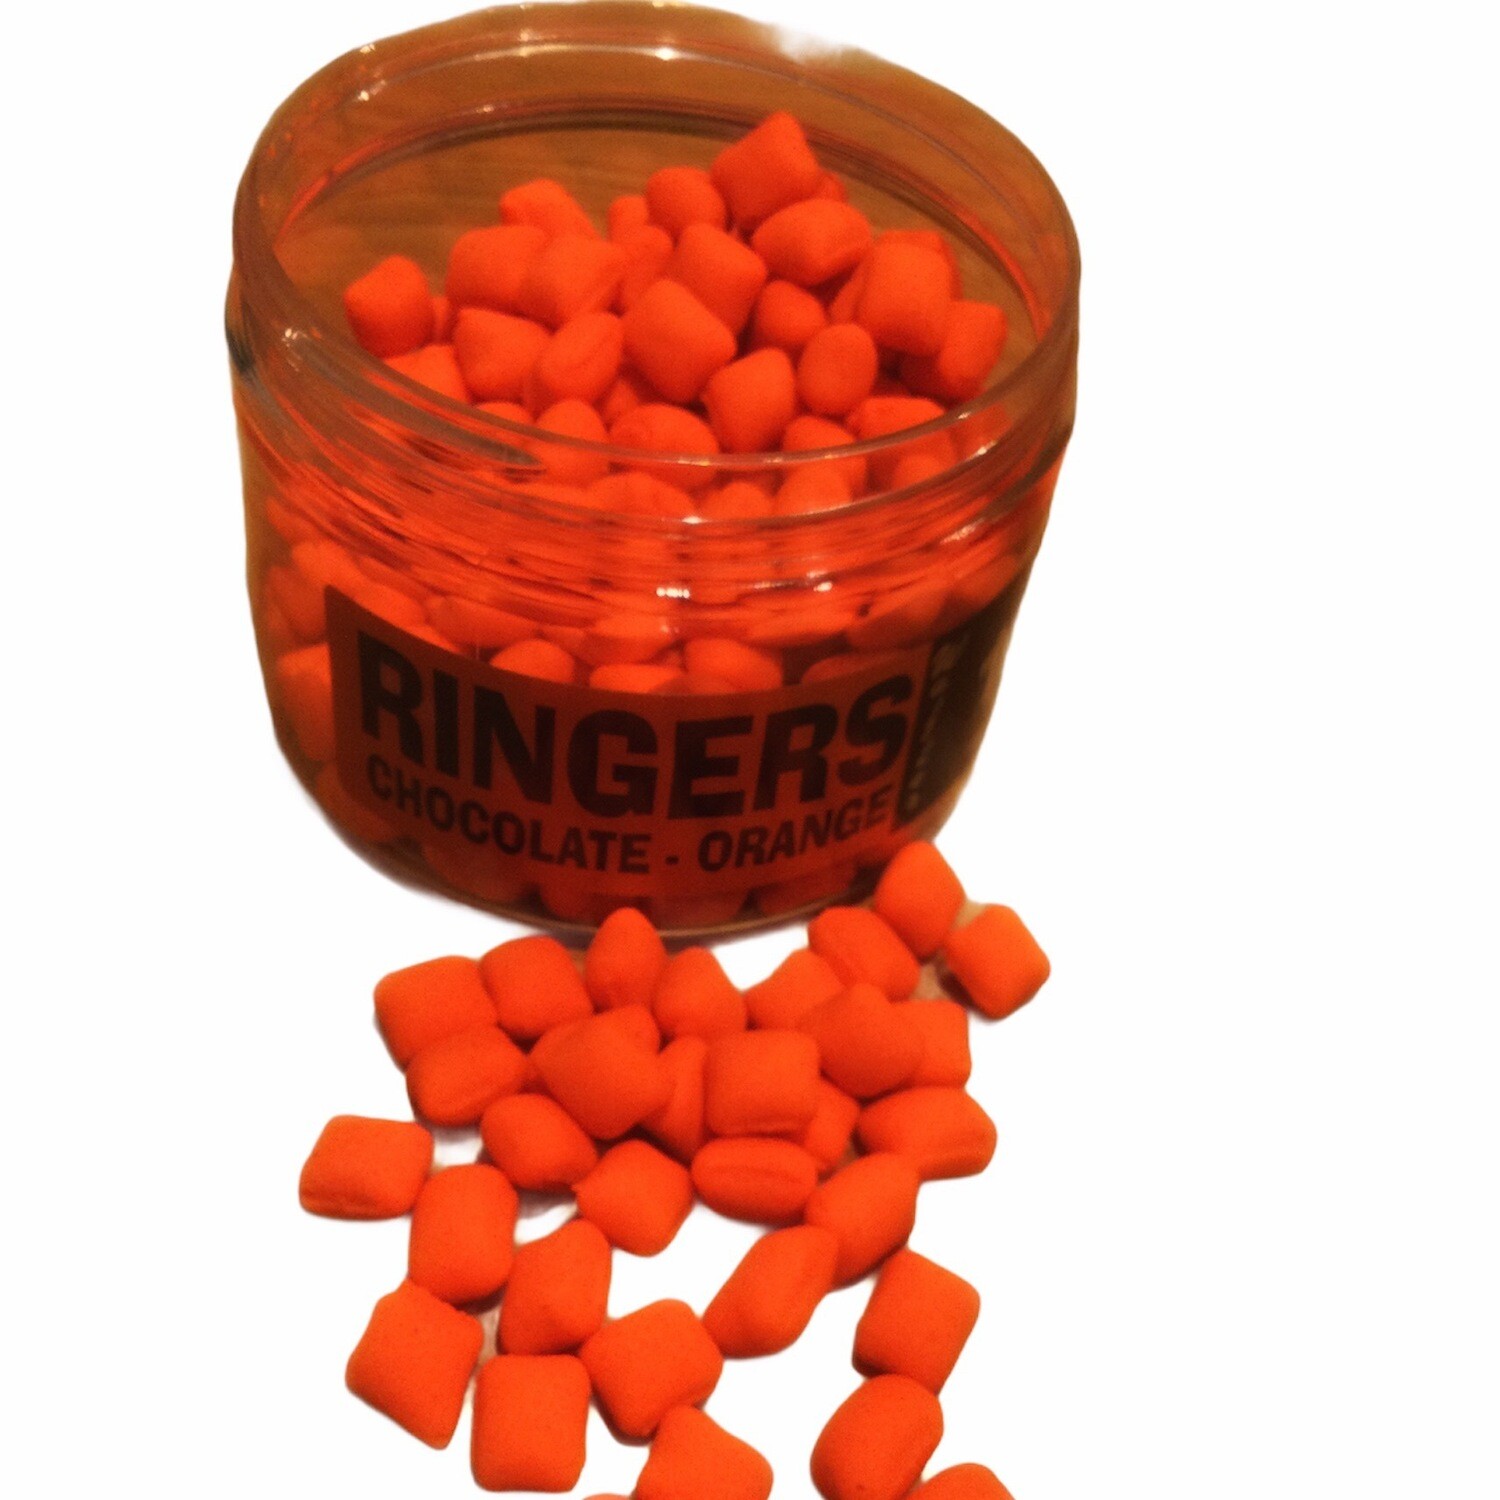 Ringers Chocolate Orange Slims 10mm